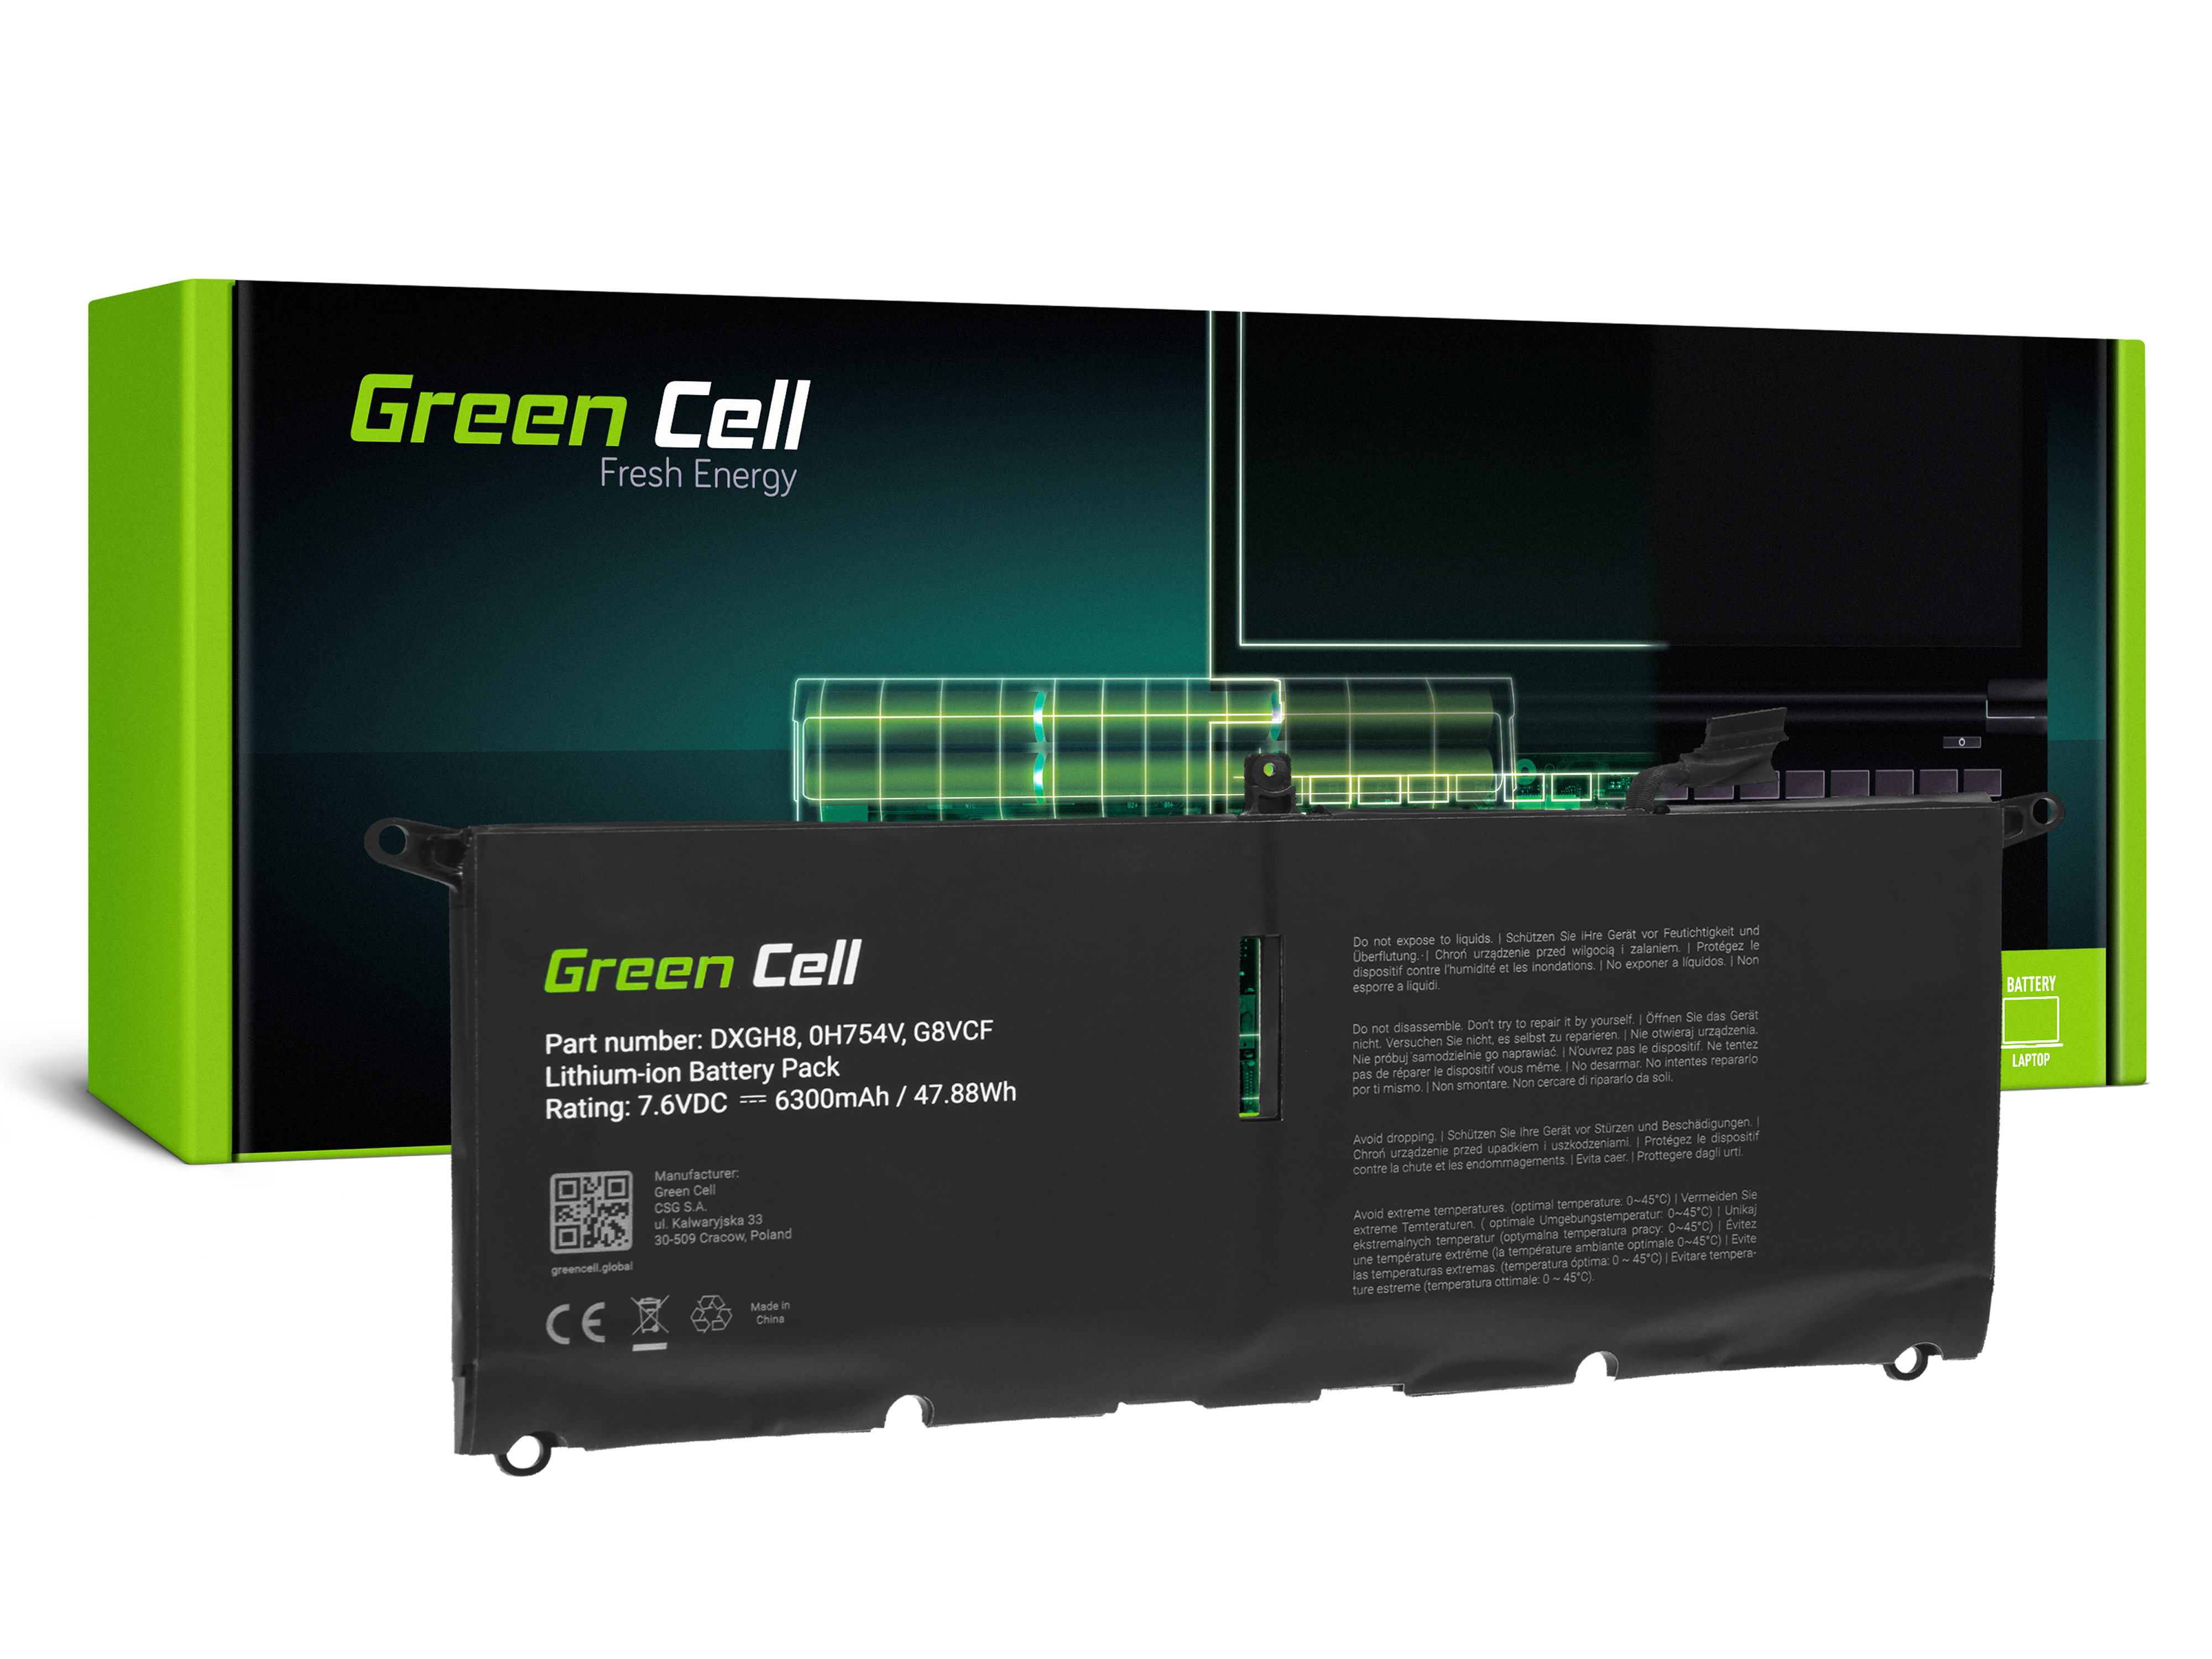 Green Cell DE143 Baterie Dell DXGH8, Dell XPS 13 9370 9380, Dell Inspiron 13 3301 5390 7390, Dell Vostro 13 5390 6300mAh Li-Pol